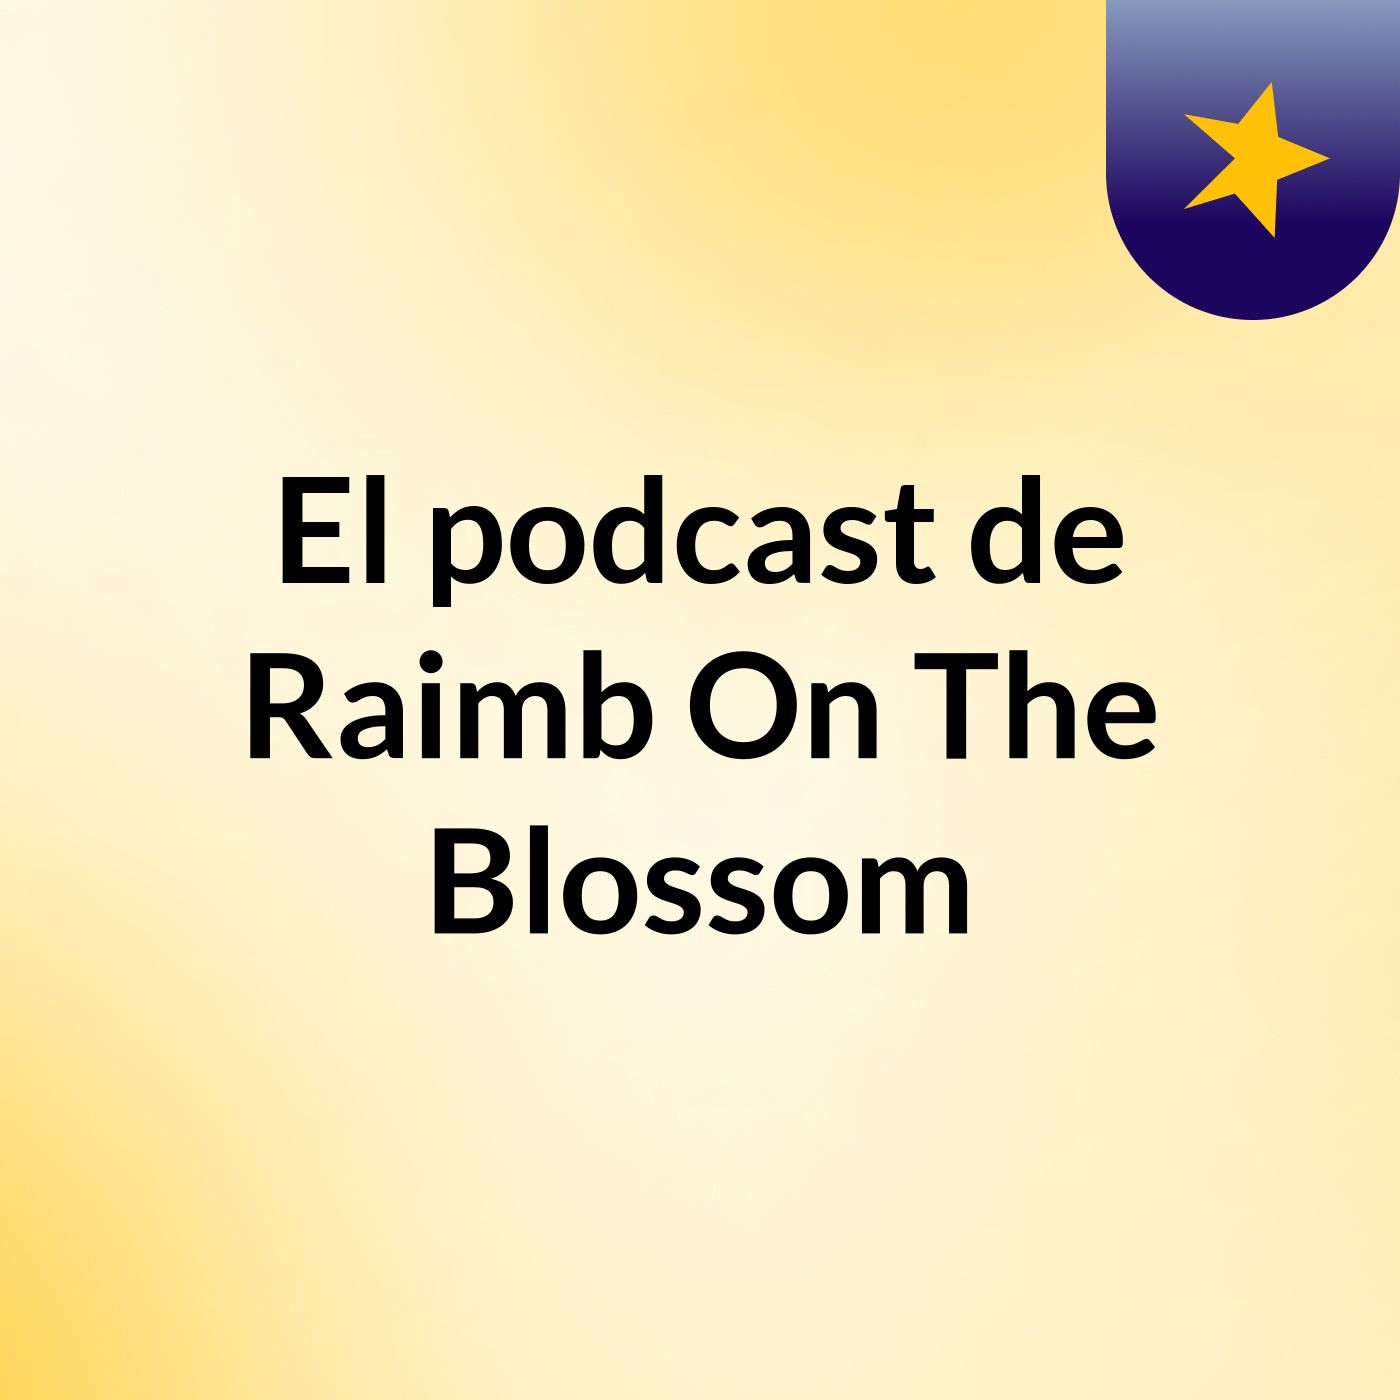 El podcast de Raimb On The Blossom